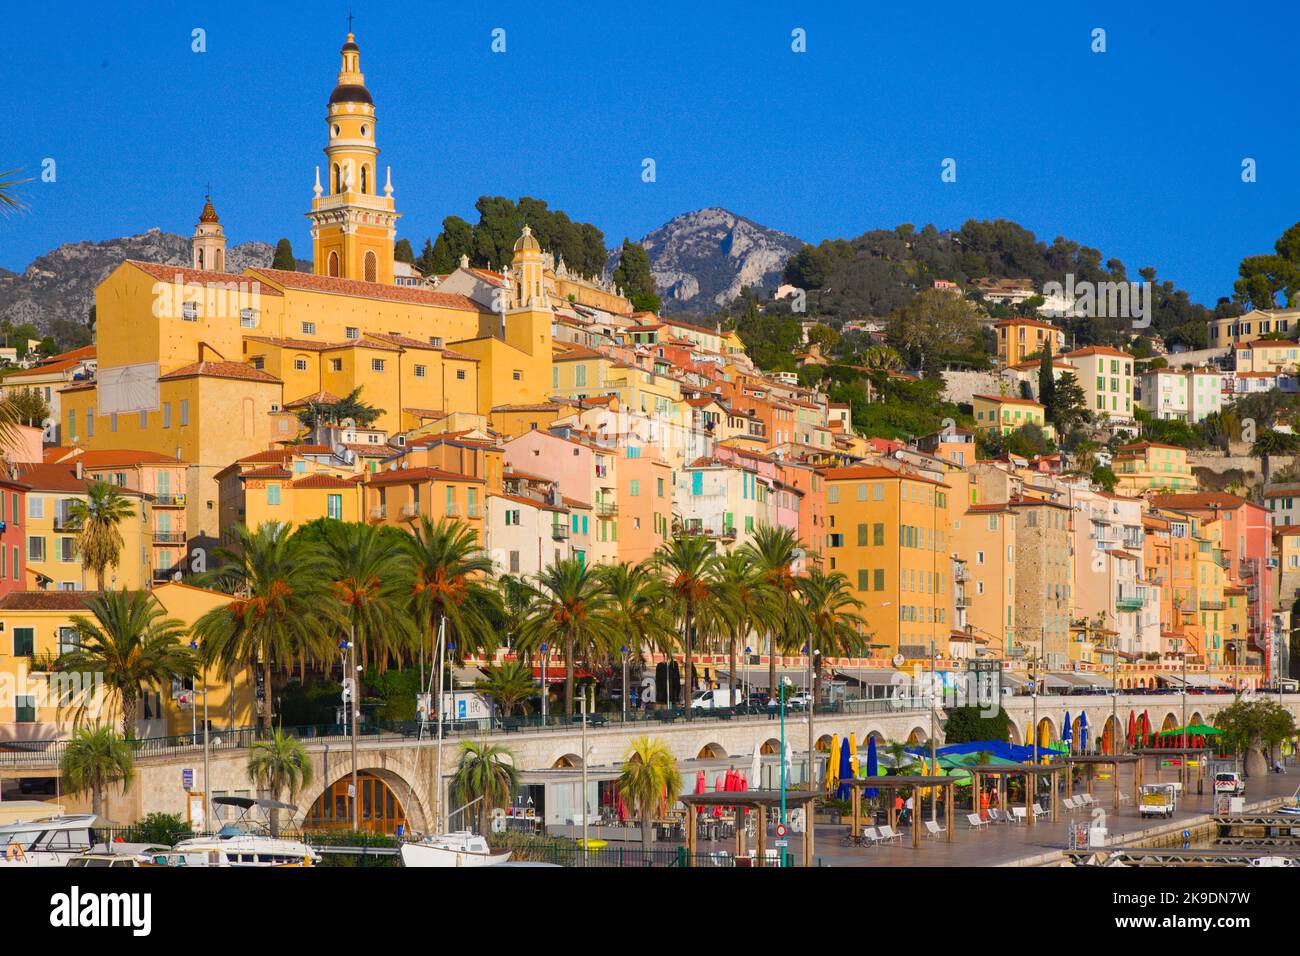 France, Cote d'Azur, Menton, Vieux Port, skyline, Stock Photo